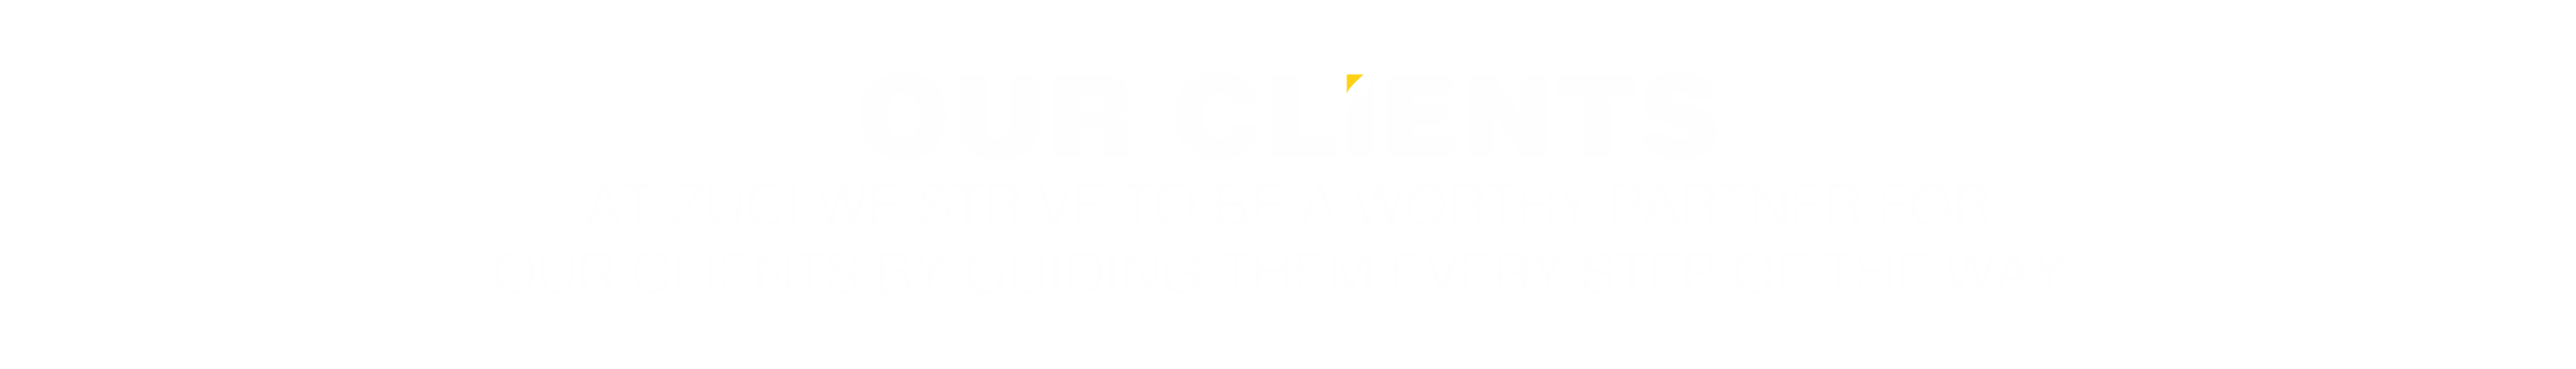 zuci_client_hero_text-01